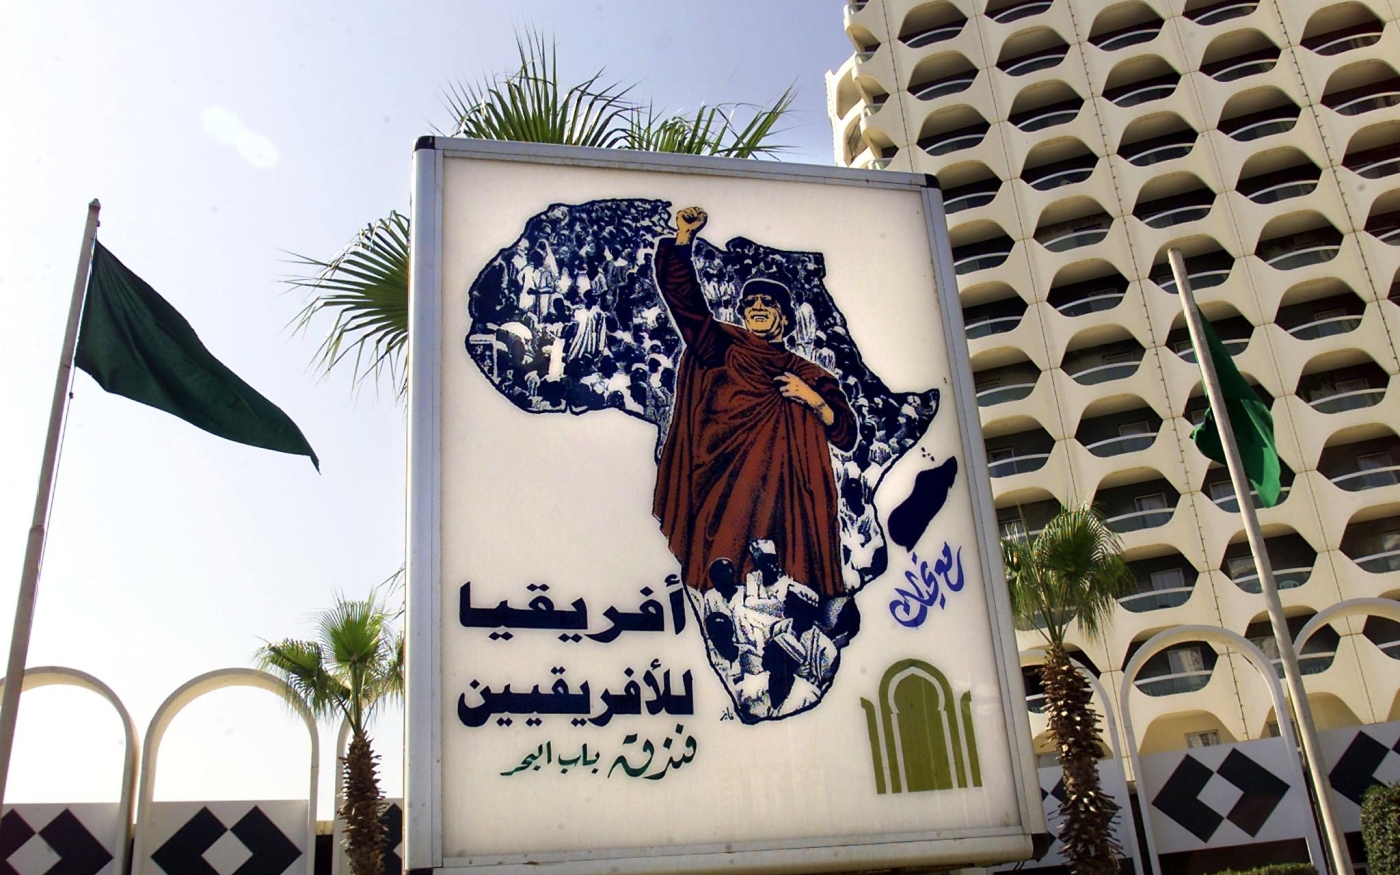 Une affiche de Mouammar Kadhafi sur laquelle on peut lire « L’Afrique appartient aux Africains », apparaît devant l’hôtel Bab al-Bahr (Porte de la mer), à Tripoli, le 17 août 2000 (AFP)